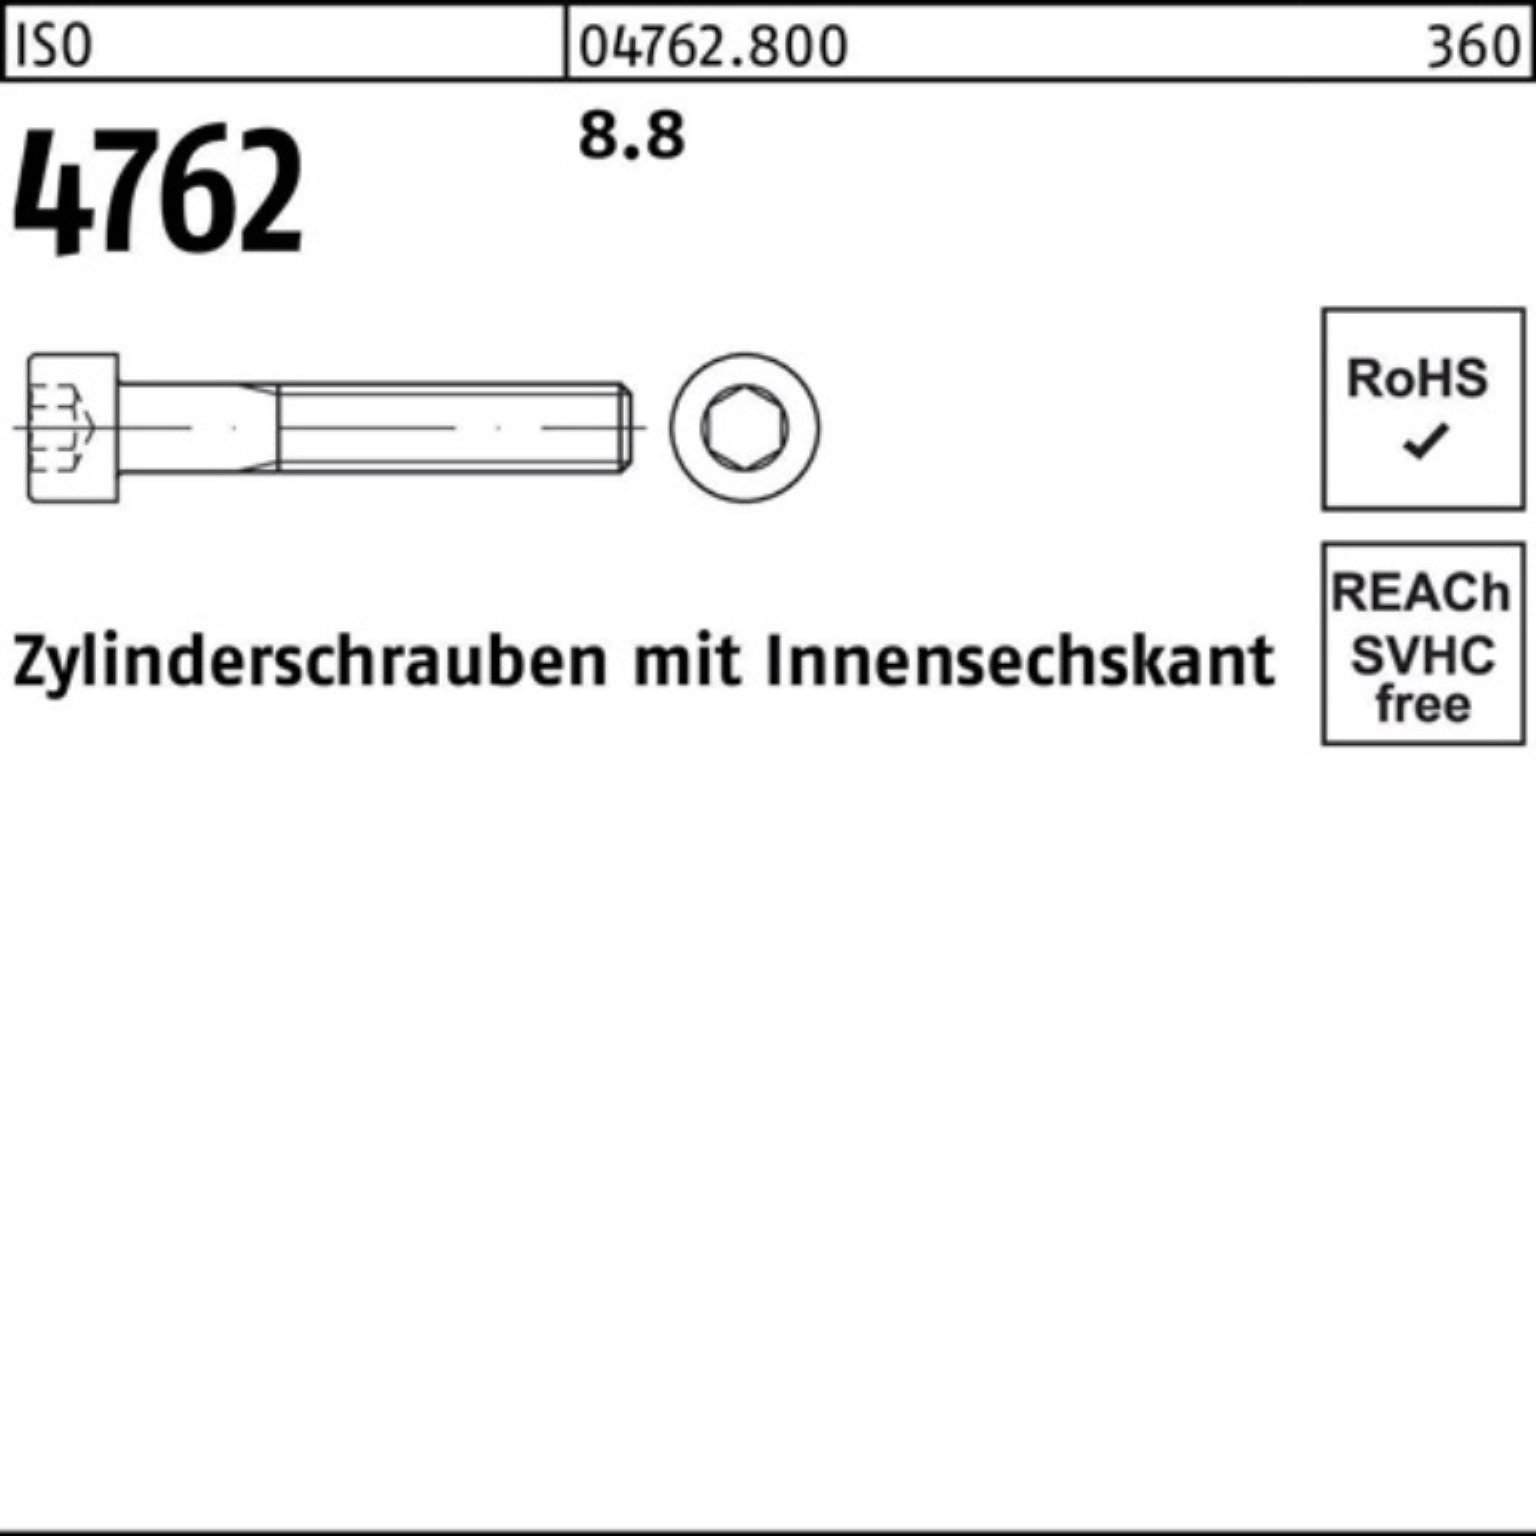 Reyher Zylinderschraube 500er Stück Innen-6kt 4762 Zylinderschraube IS 500 ISO Pack 8.8 8 M4x